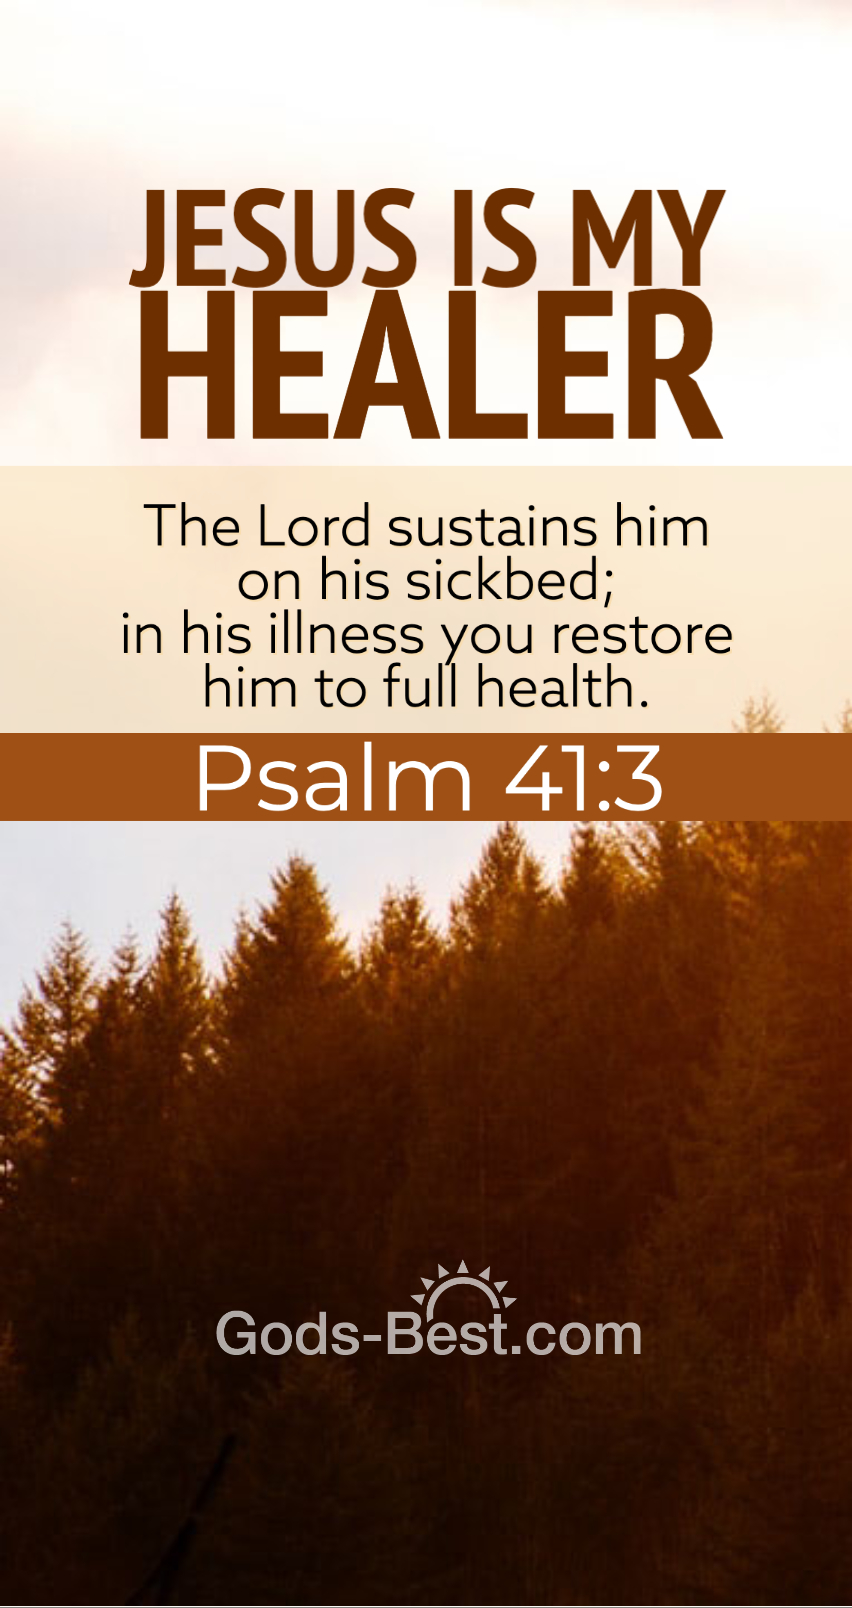 Jesus Is My Healer phone wallpaper